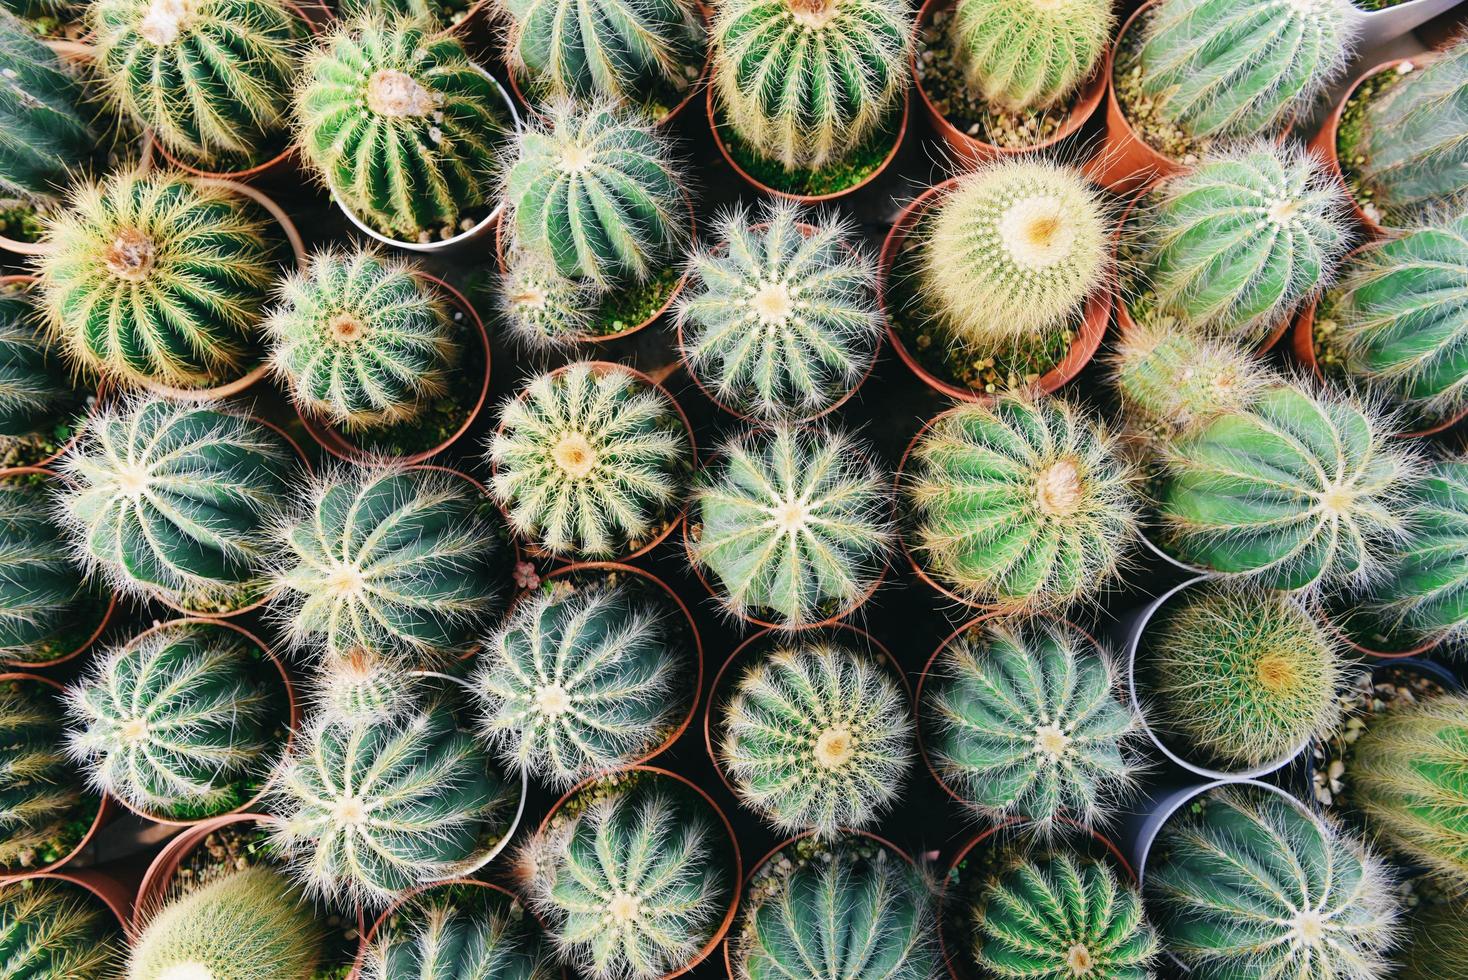 Miniatur-Kaktustopf dekorieren im Garten verschiedene Arten schöner Kaktusmarkt oder Kaktusfarm foto